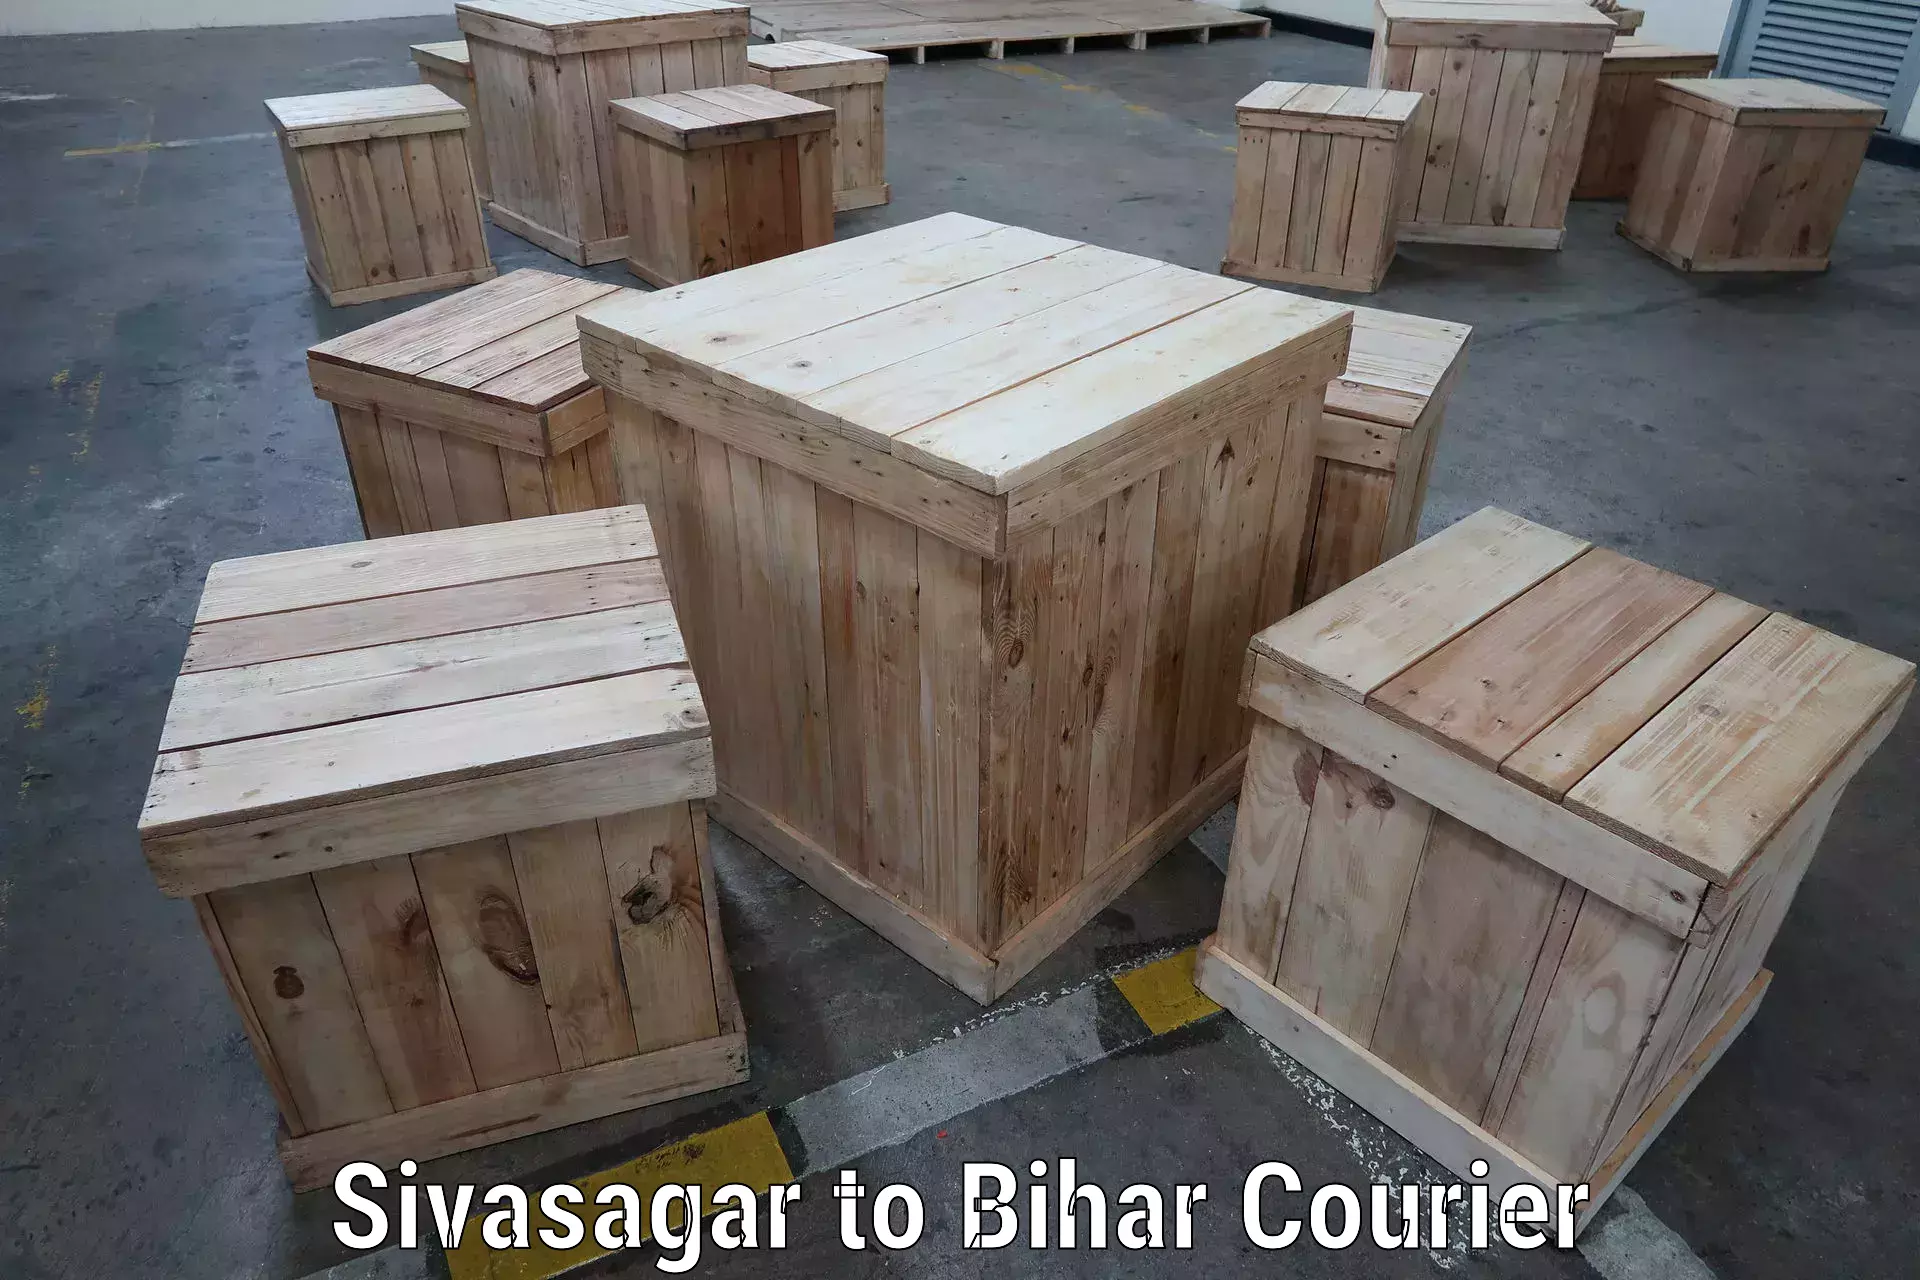 Easy access courier services Sivasagar to Dinara